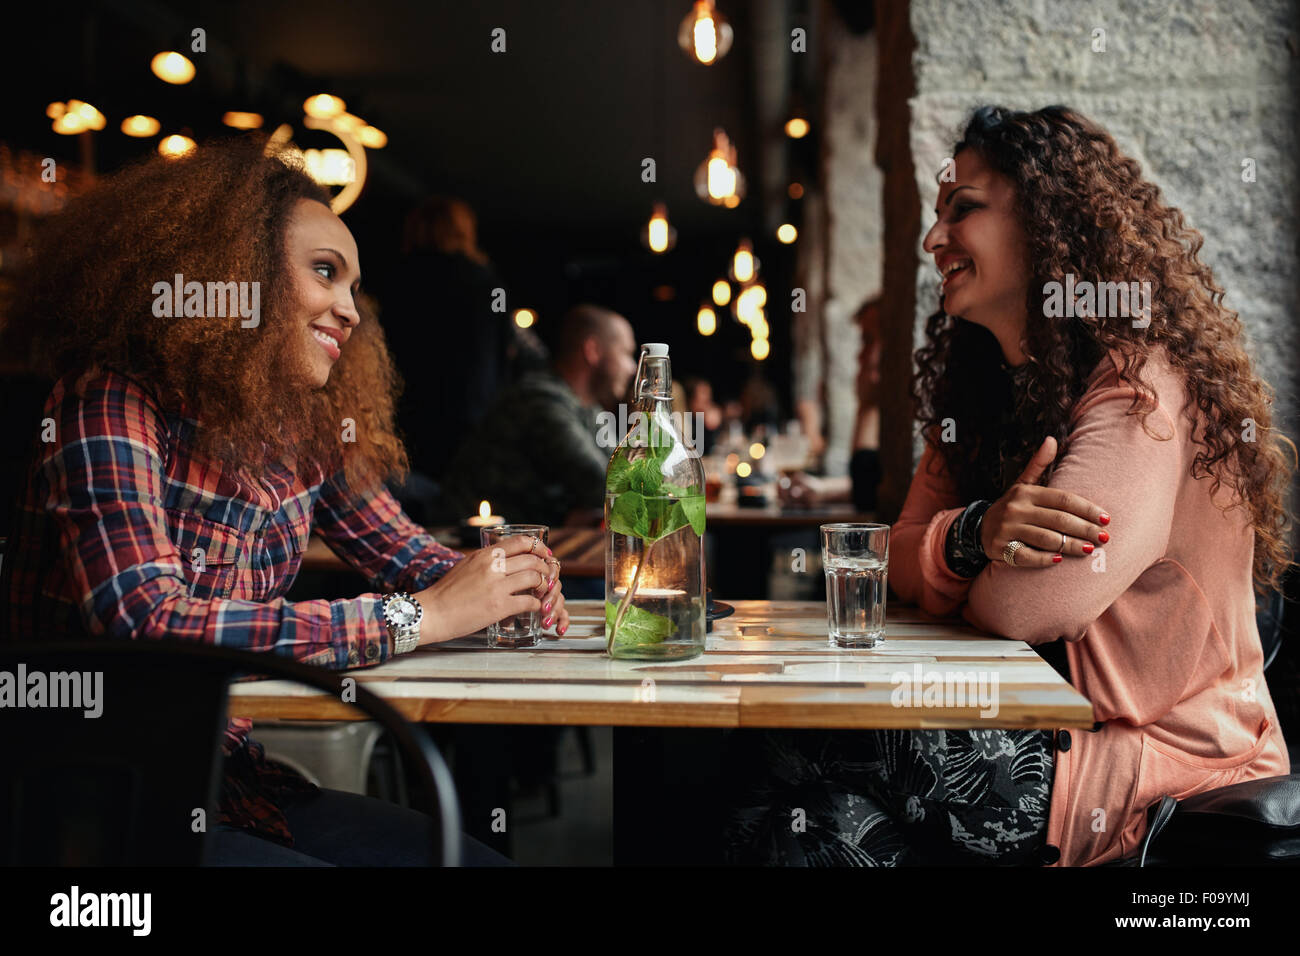 Imagen de mujeres reunión de amigos en un café. Dos mujeres jóvenes en un restaurante hablando y sonriendo. Foto de stock